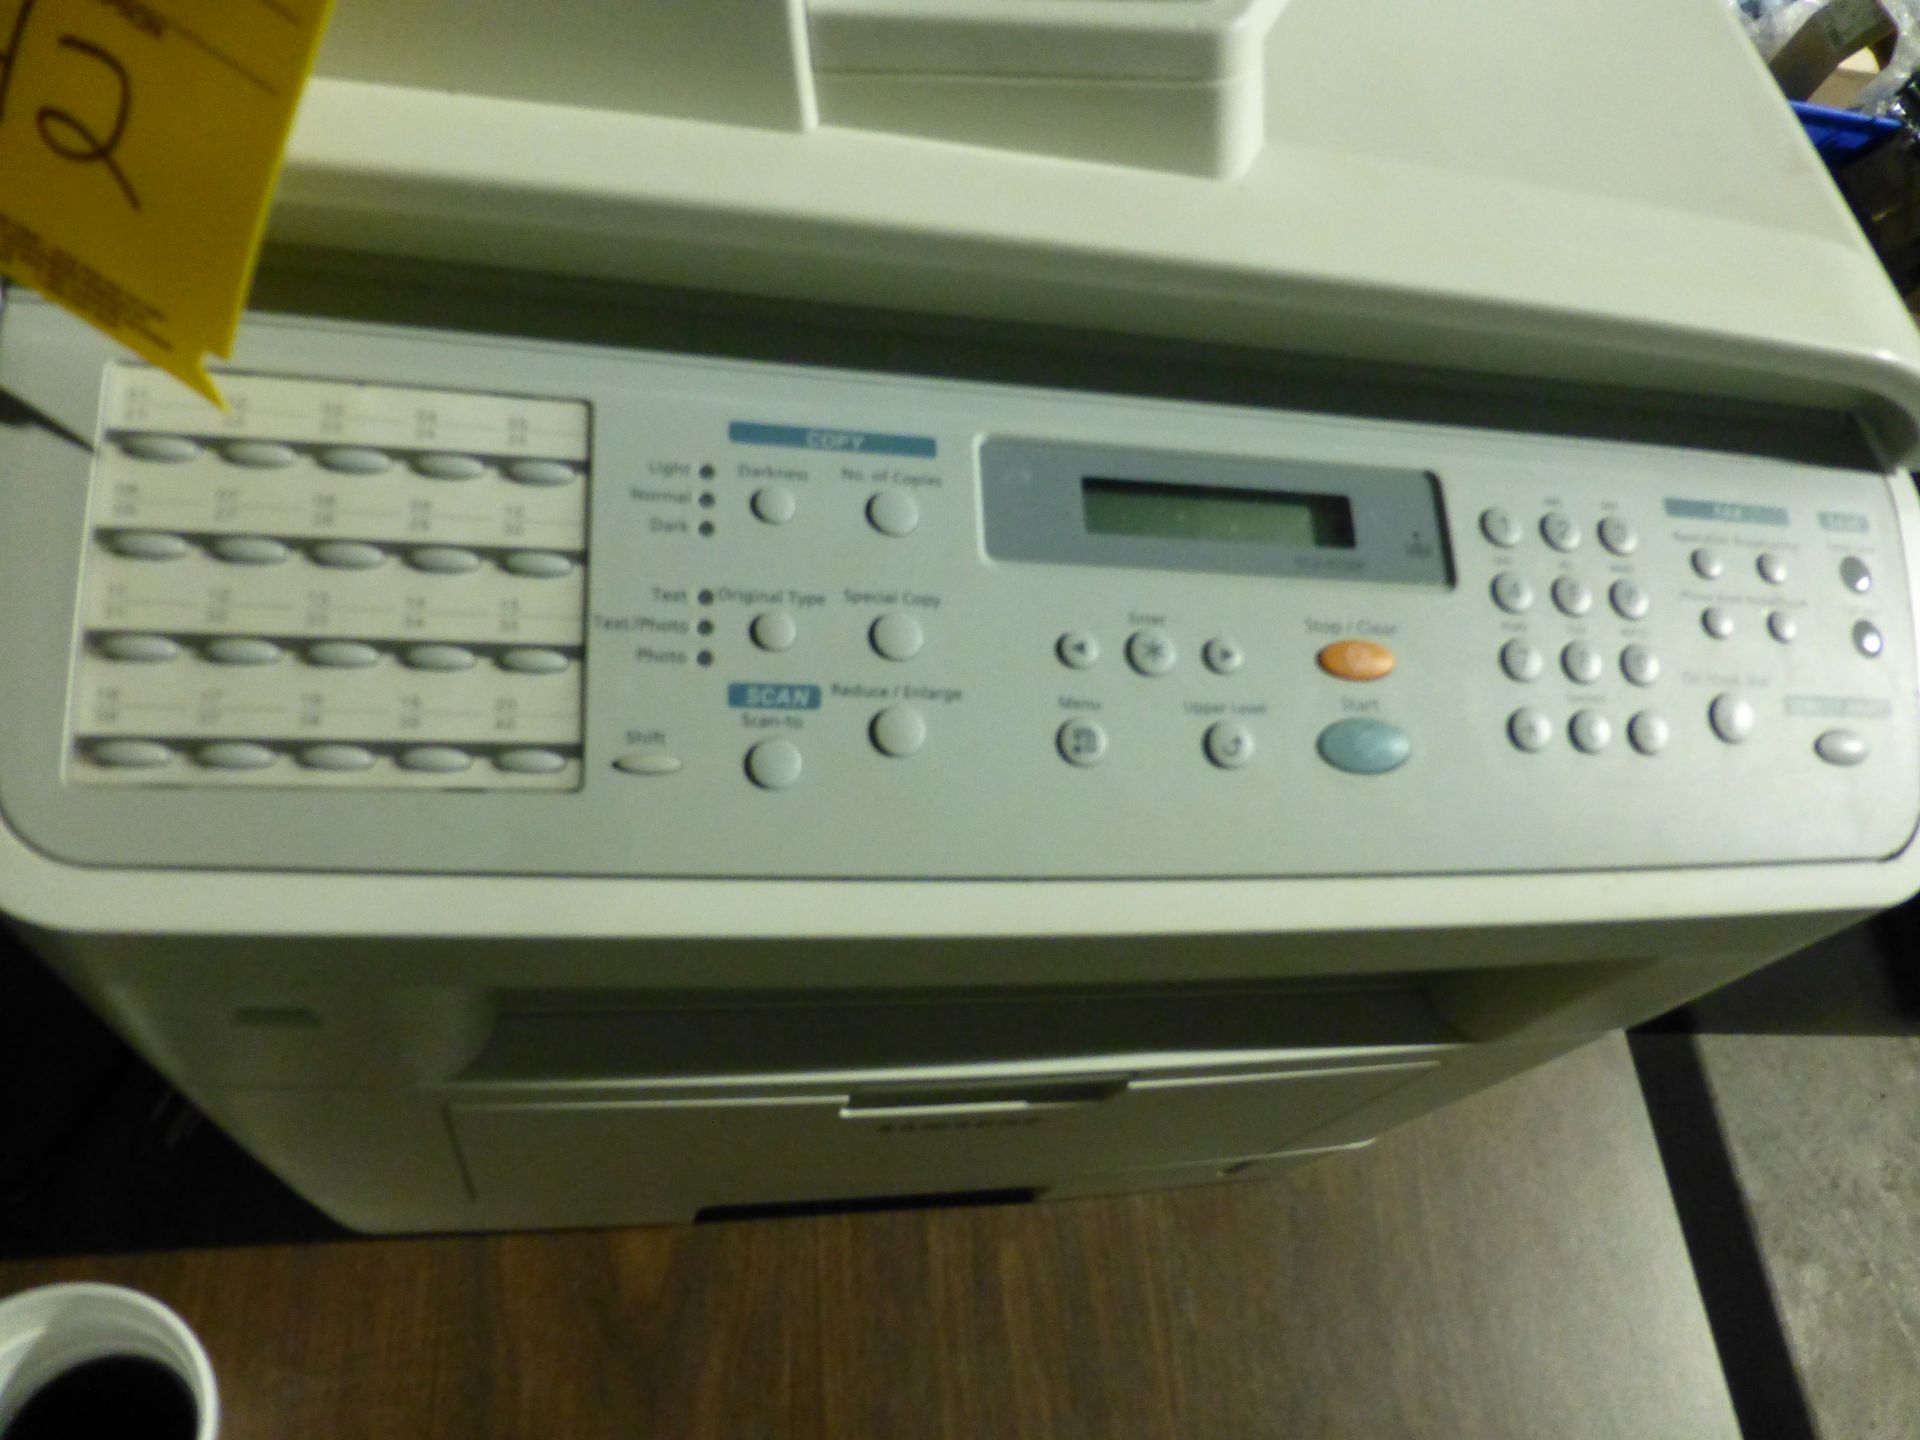 Samsung 4in1 printer/fax/copier/scanner